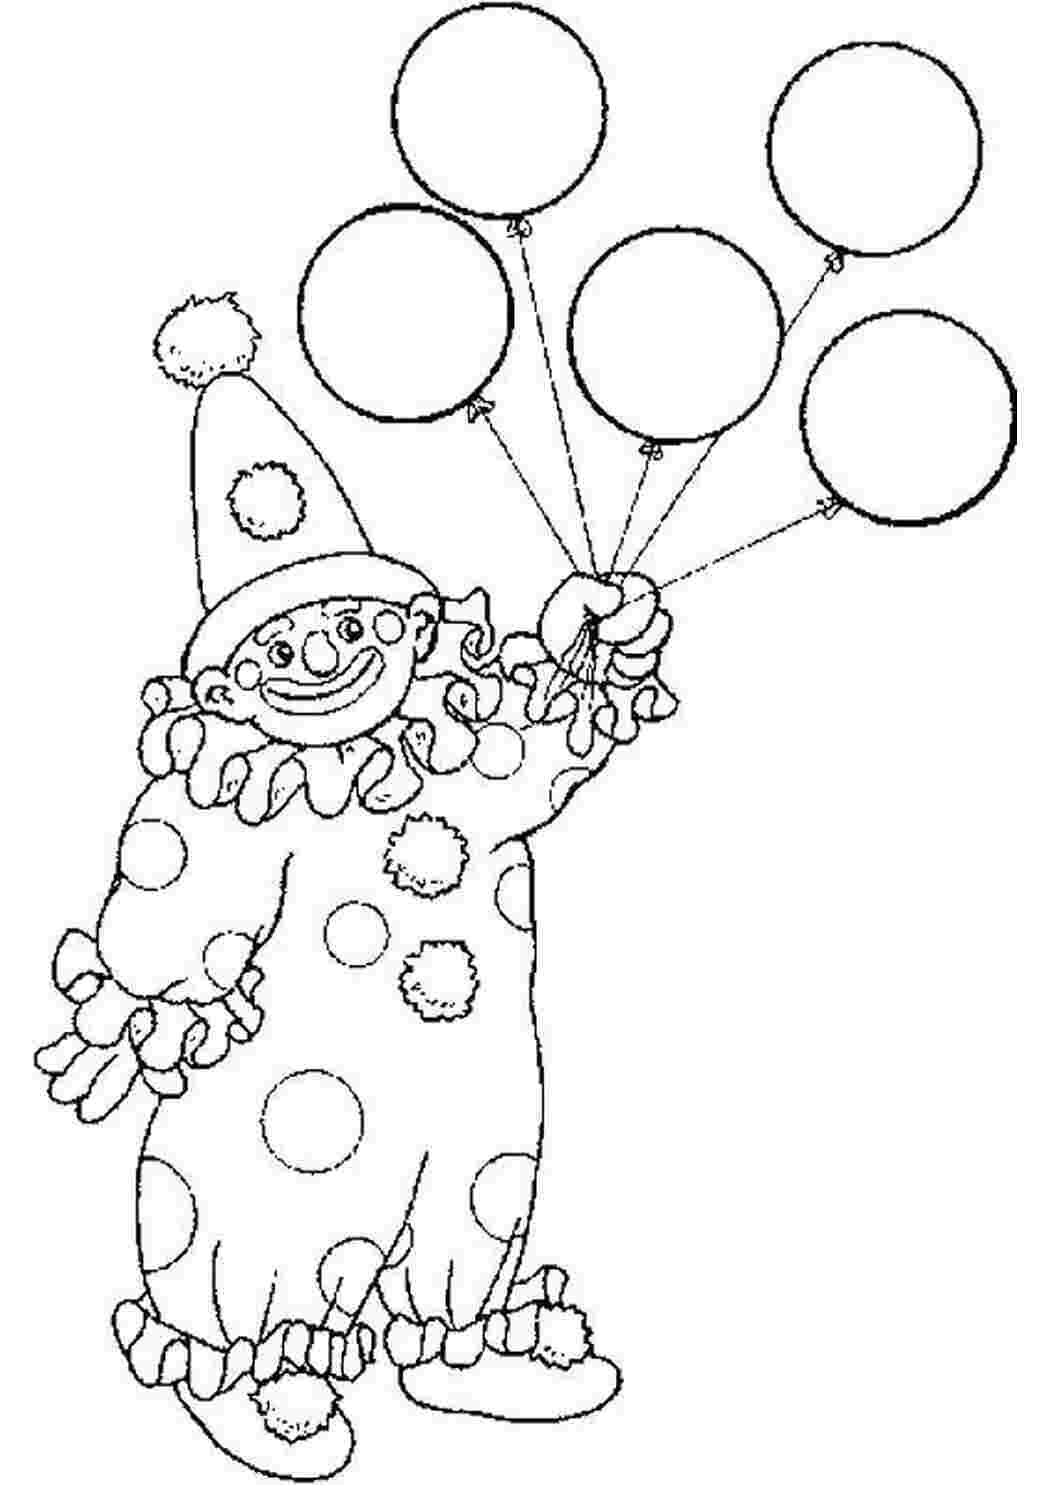 Клоуны раскраска для детей 5 лет. Клоун раскраска. Раскраска клоун с шариками. Клоун раскраска для детей. Клоун для раскрашивания детям.